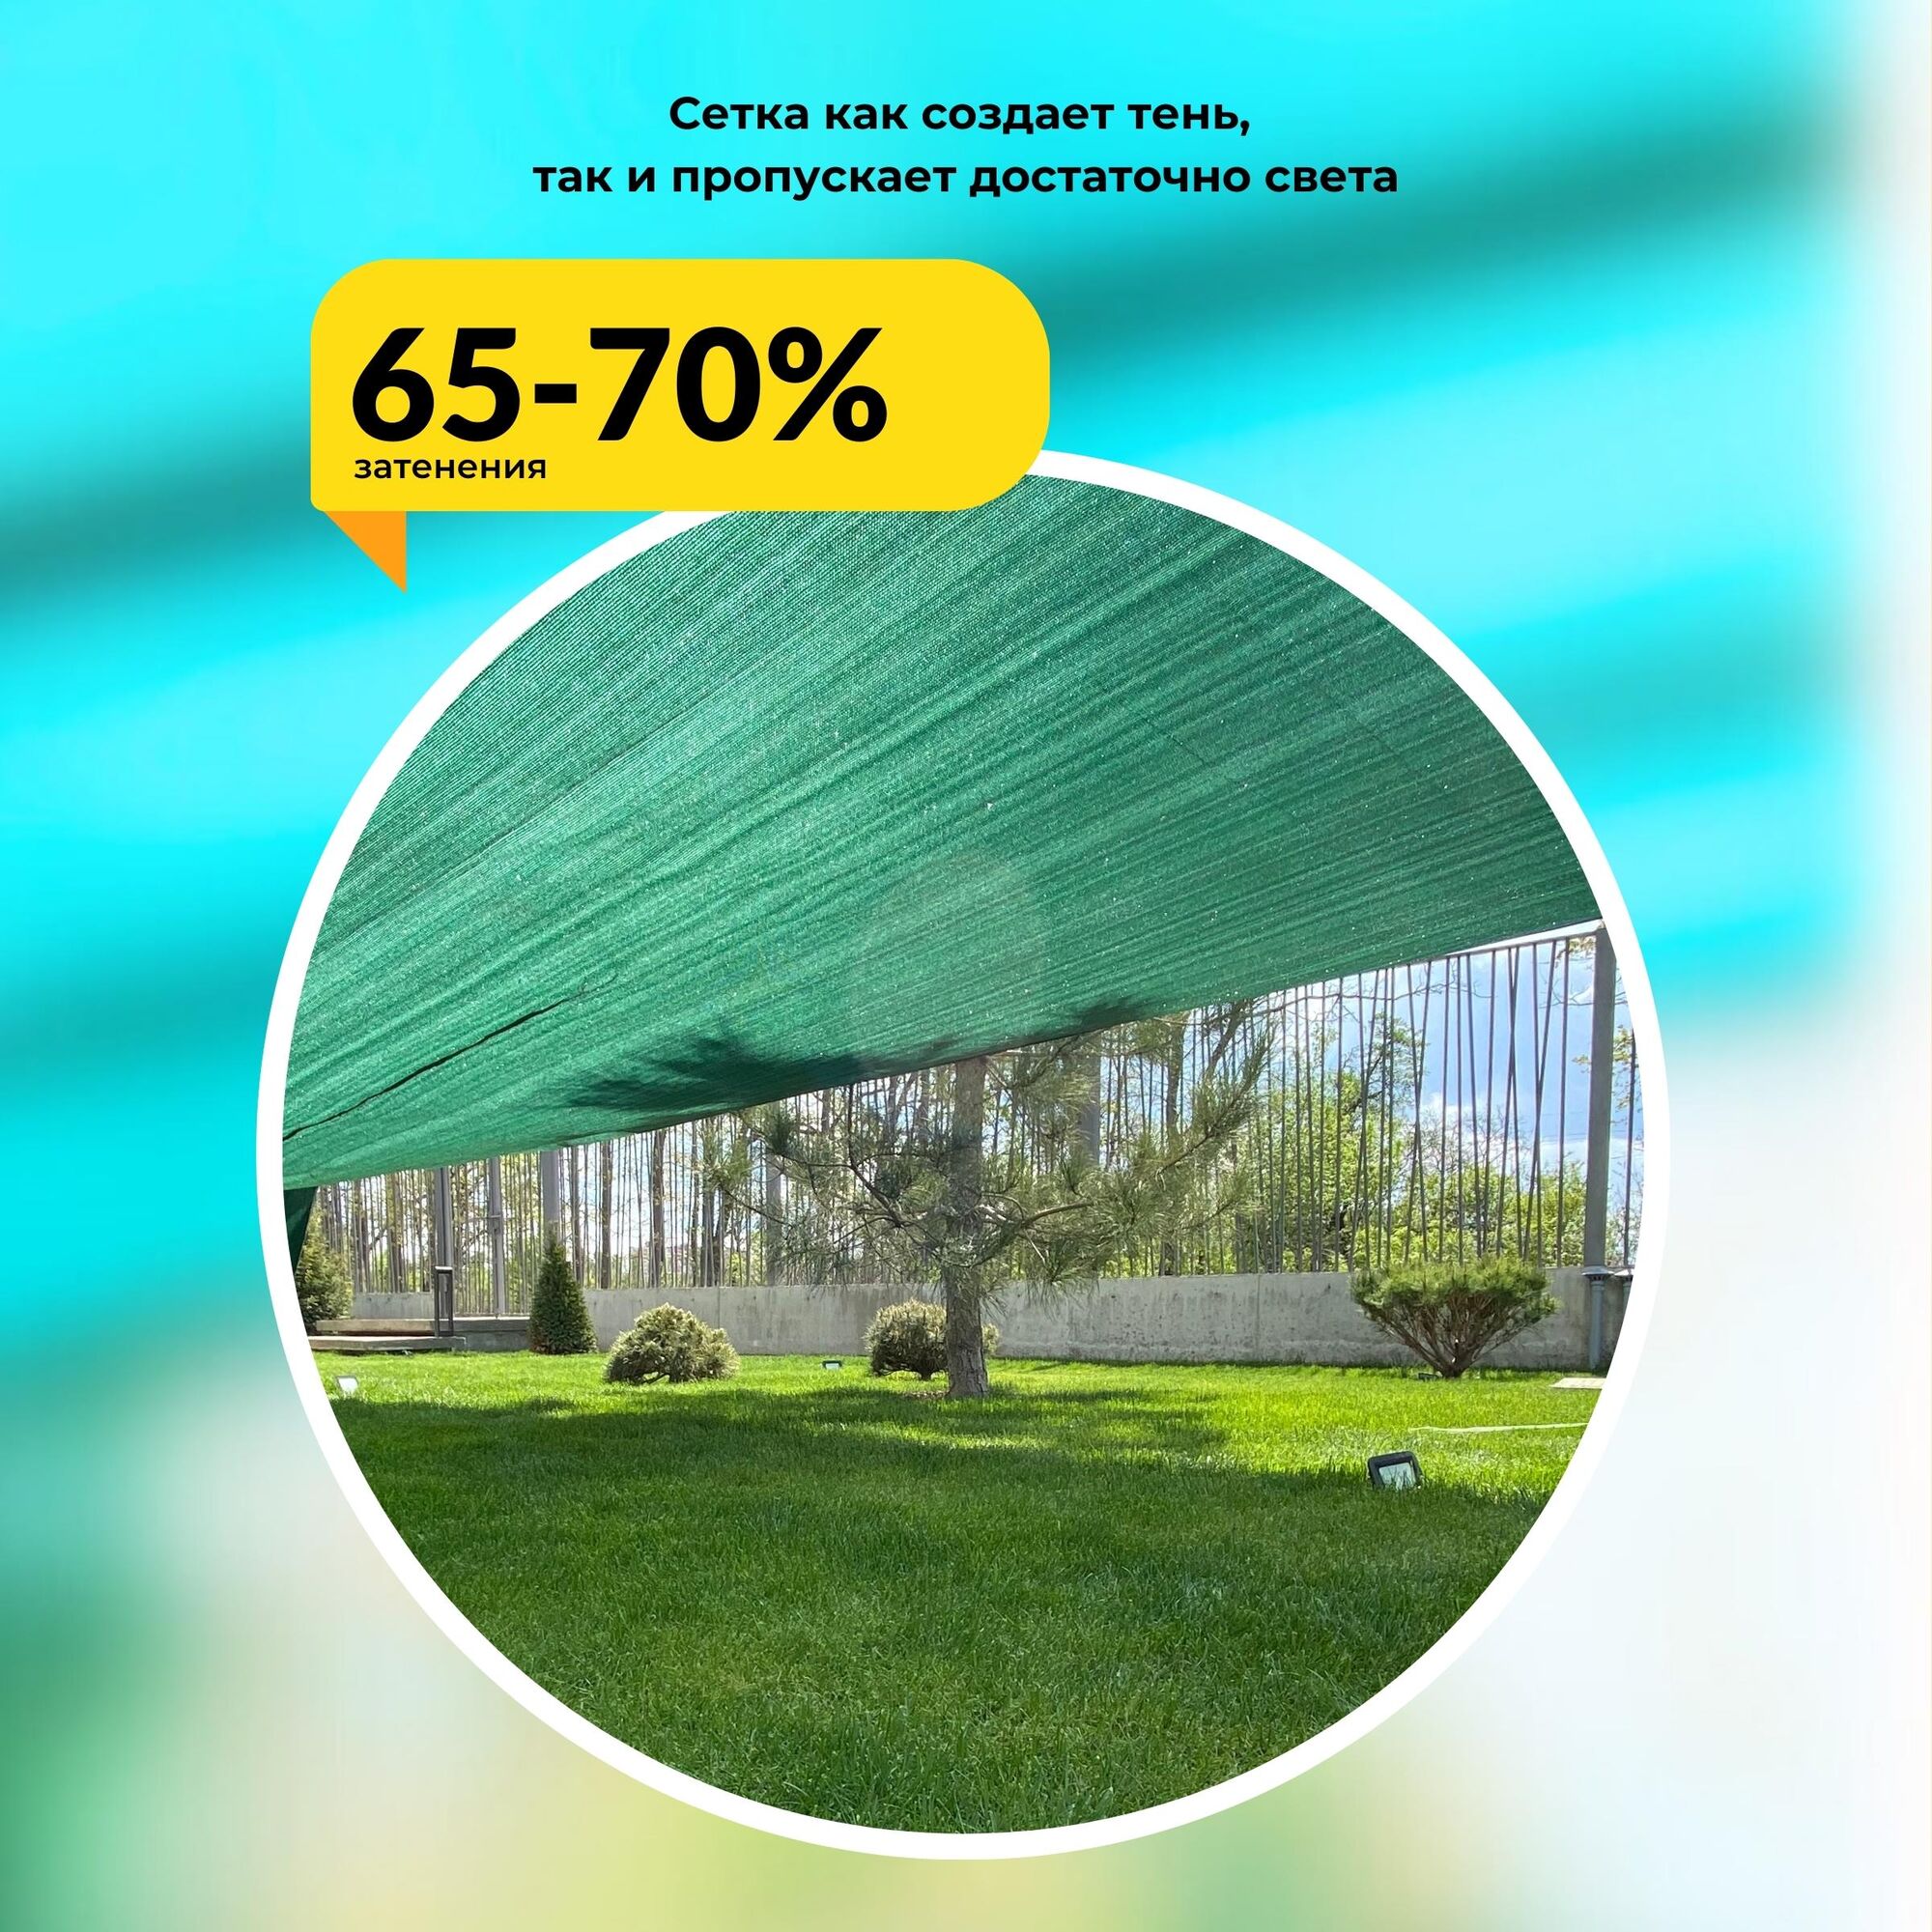 Сетка затеняющая Промышленник зеленая 70% 6х10 м 6